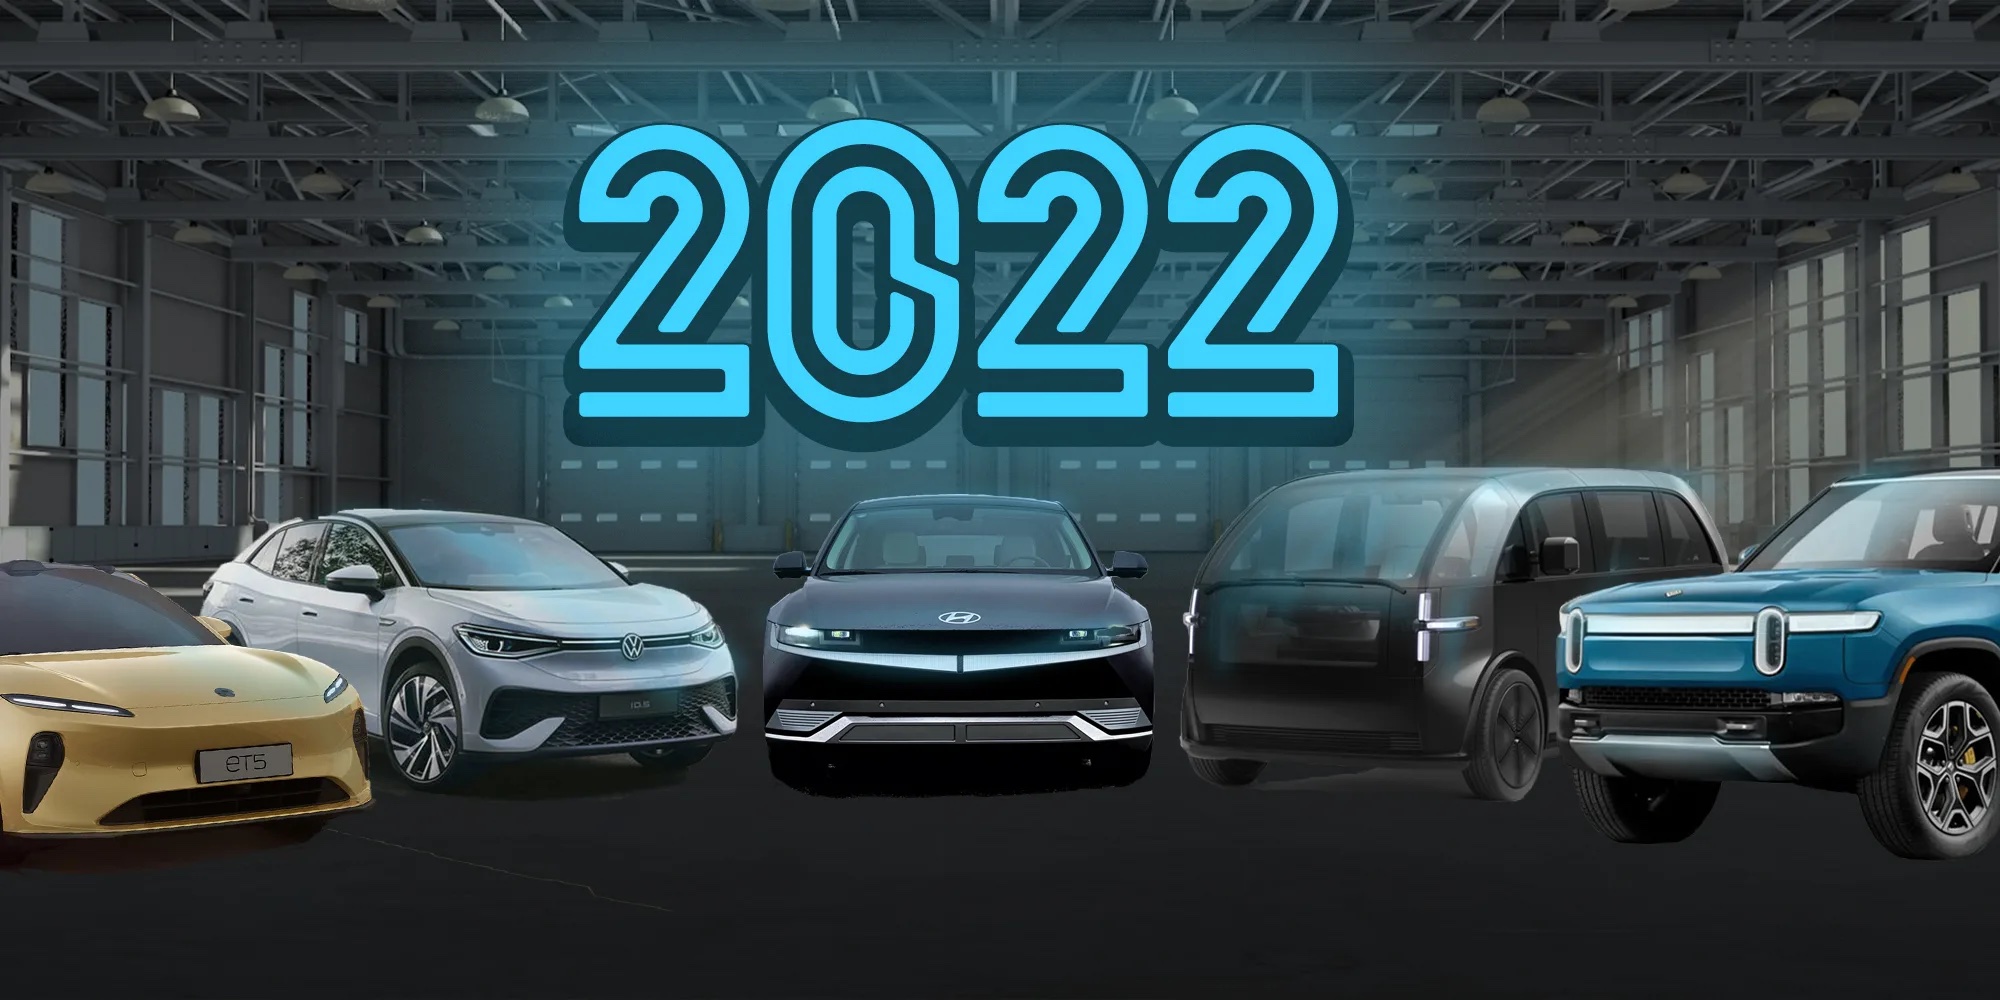 Nhìn lại những “điểm nóng” của ngành ô tô thế giới năm 2022